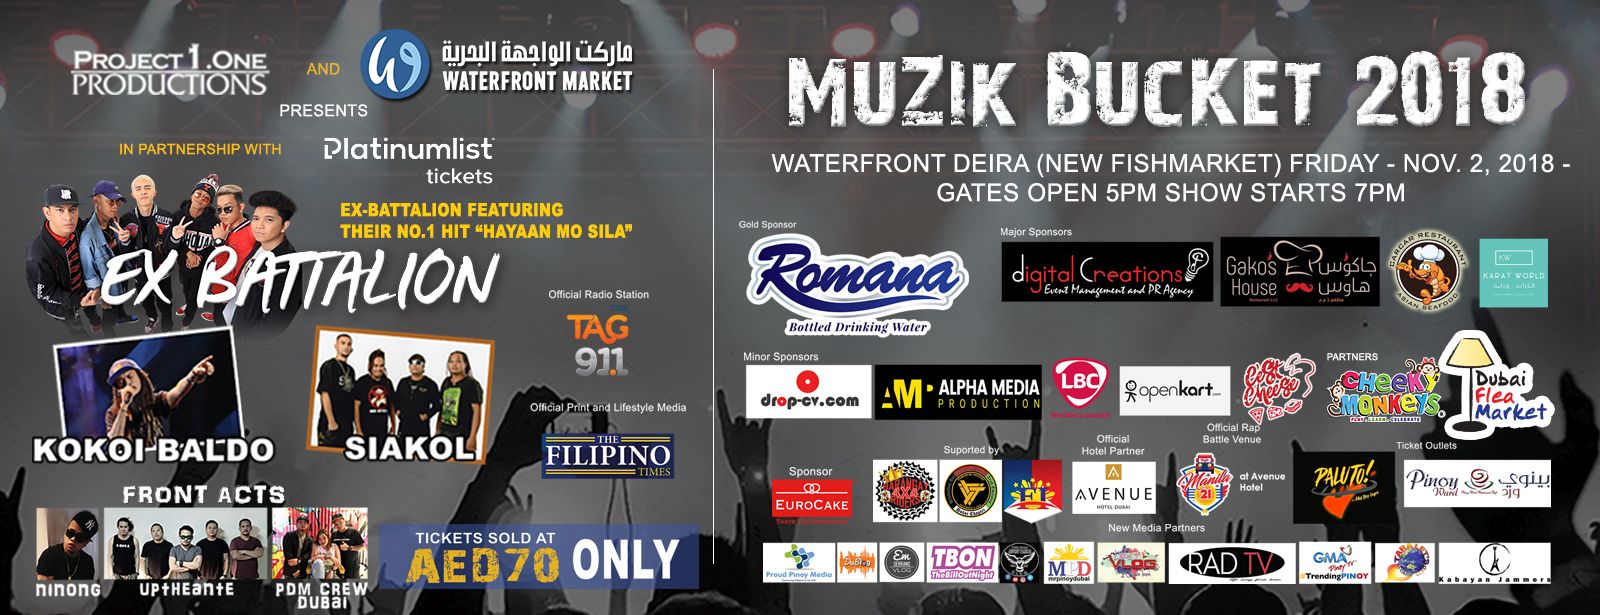 Muzik Bucket 2018 – Filipino music and fun - Coming Soon in UAE